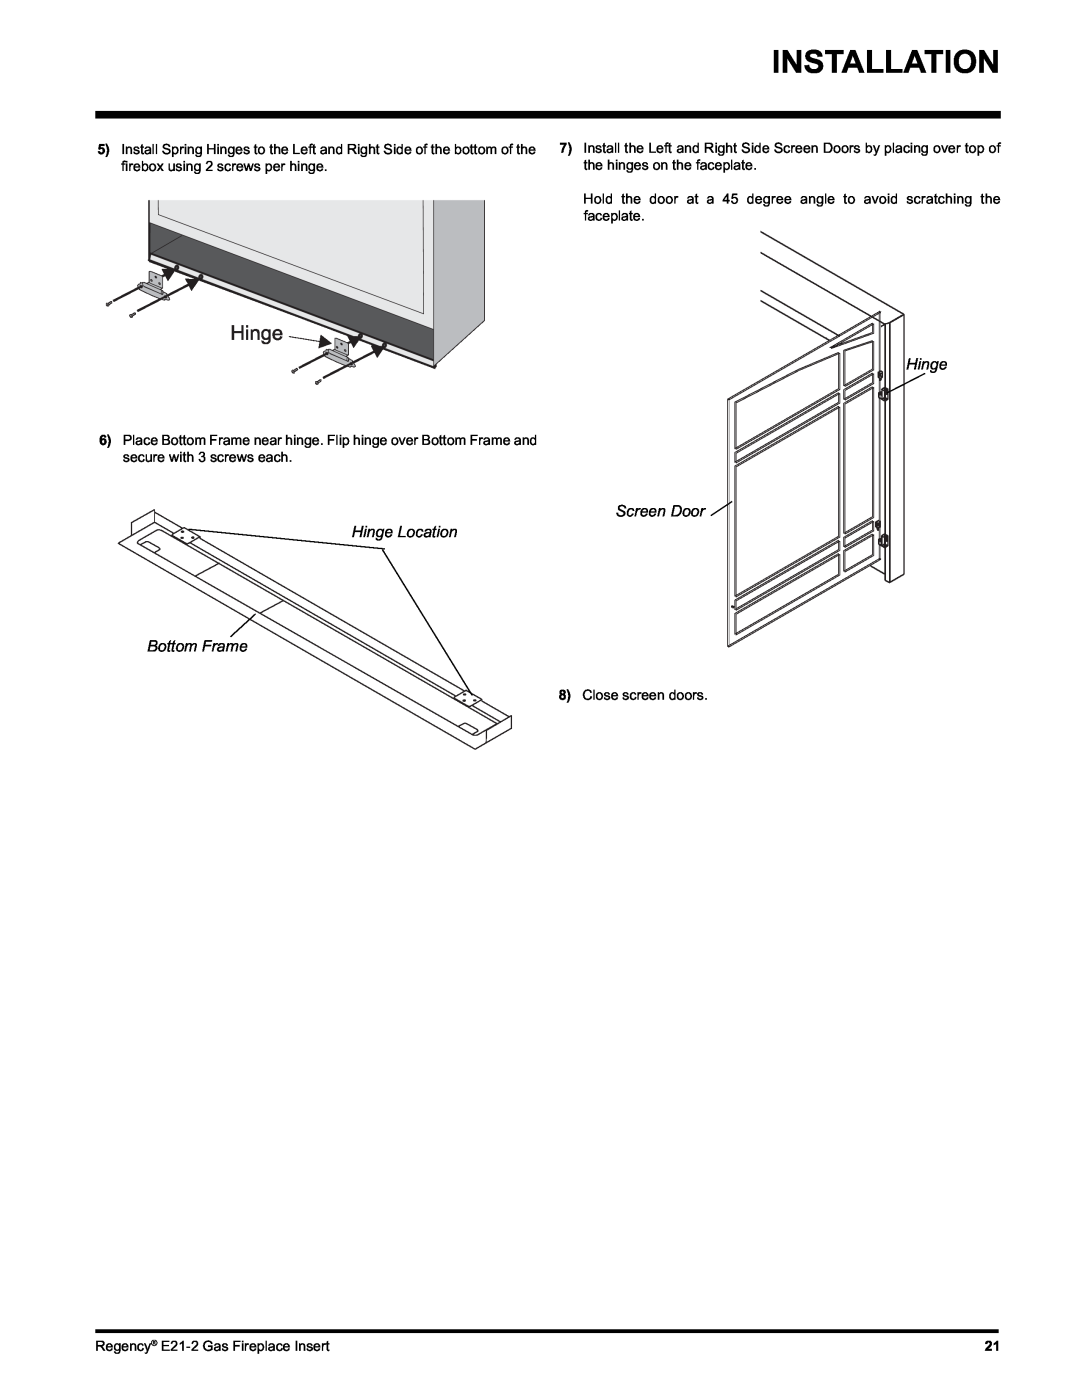 Regency E21-NG2, E21-LP2 installation manual Installation, Screen Door Hinge Location Bottom Frame 